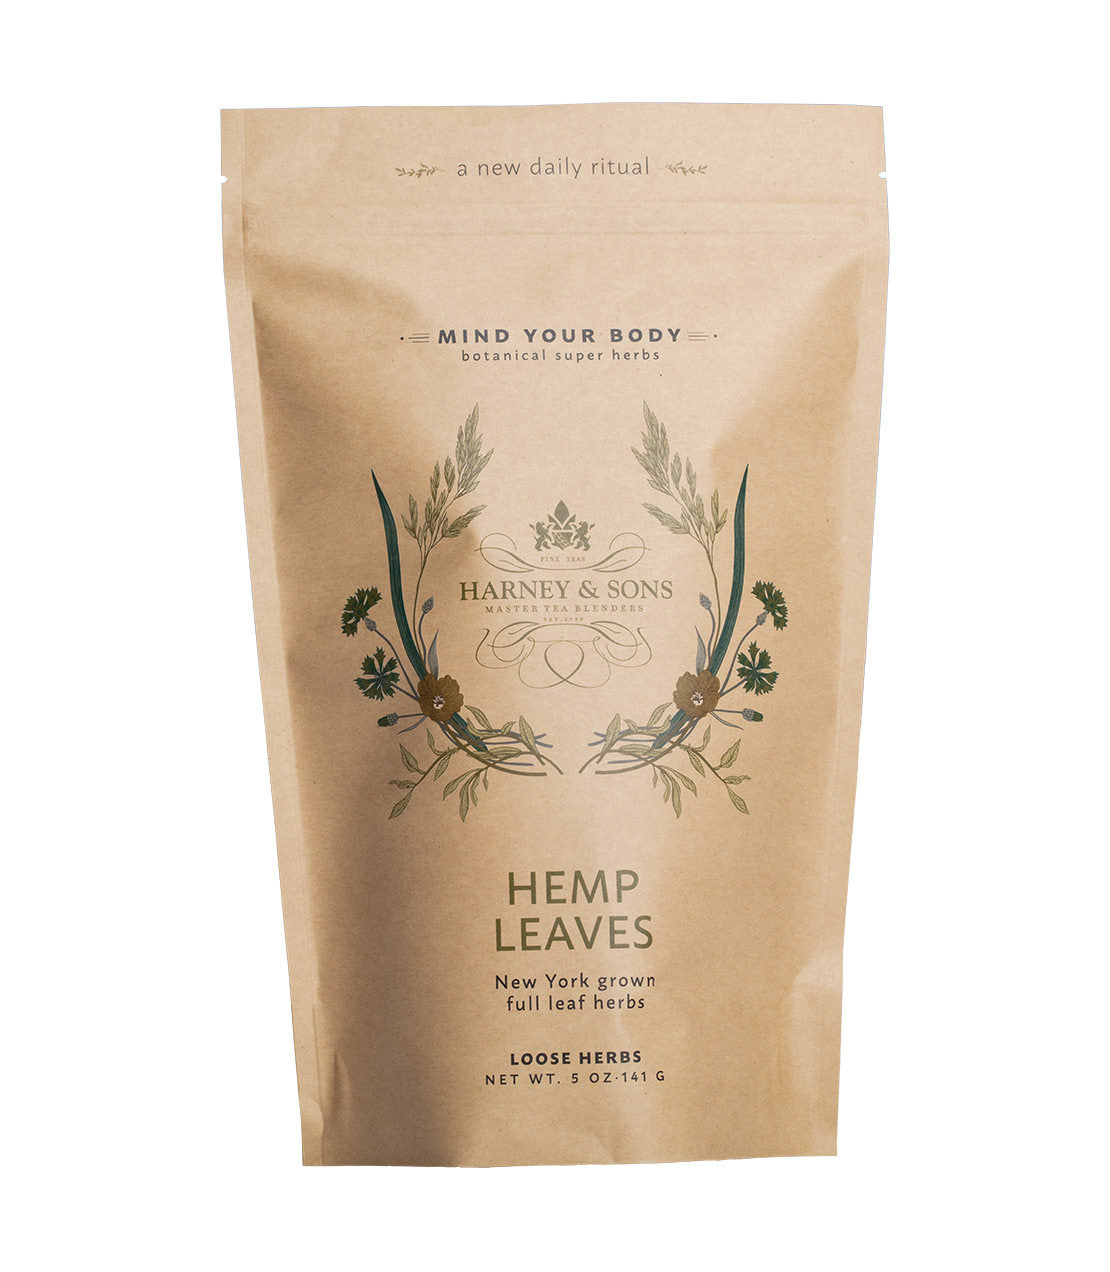 Hemp Leaves - Loose 5 oz. Bag - Harney & Sons Fine Teas